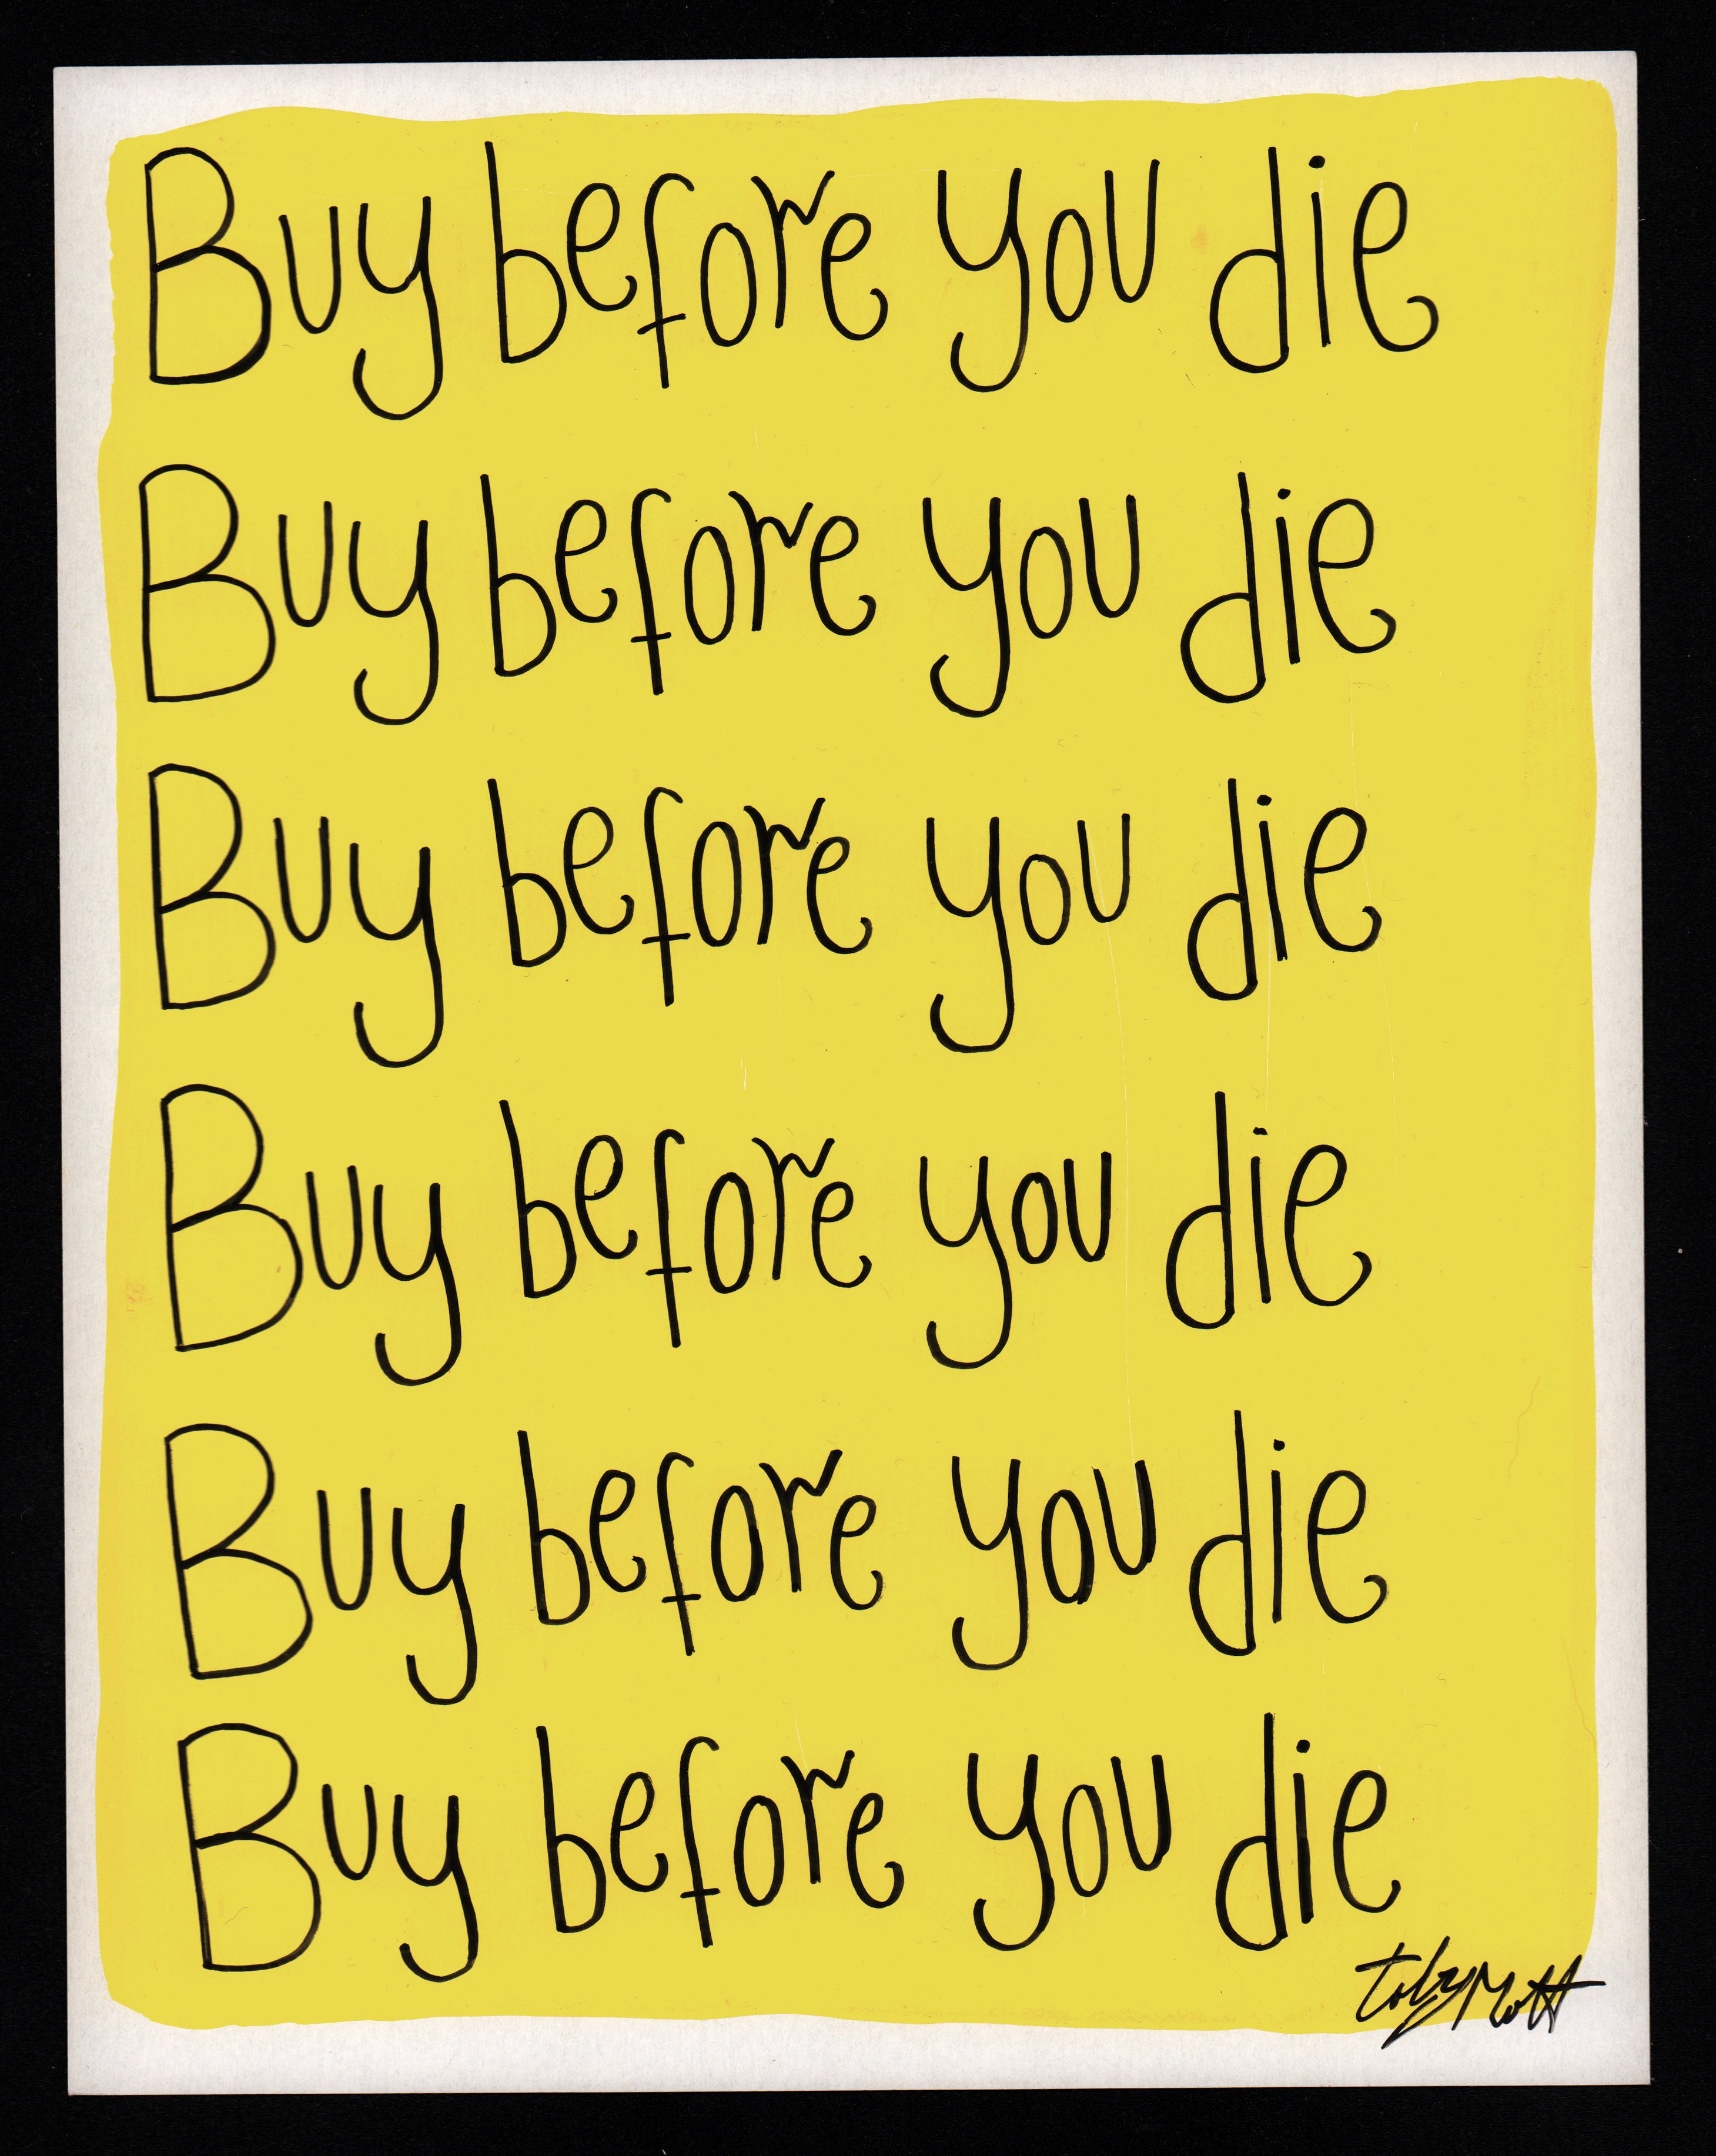 Buy before you die